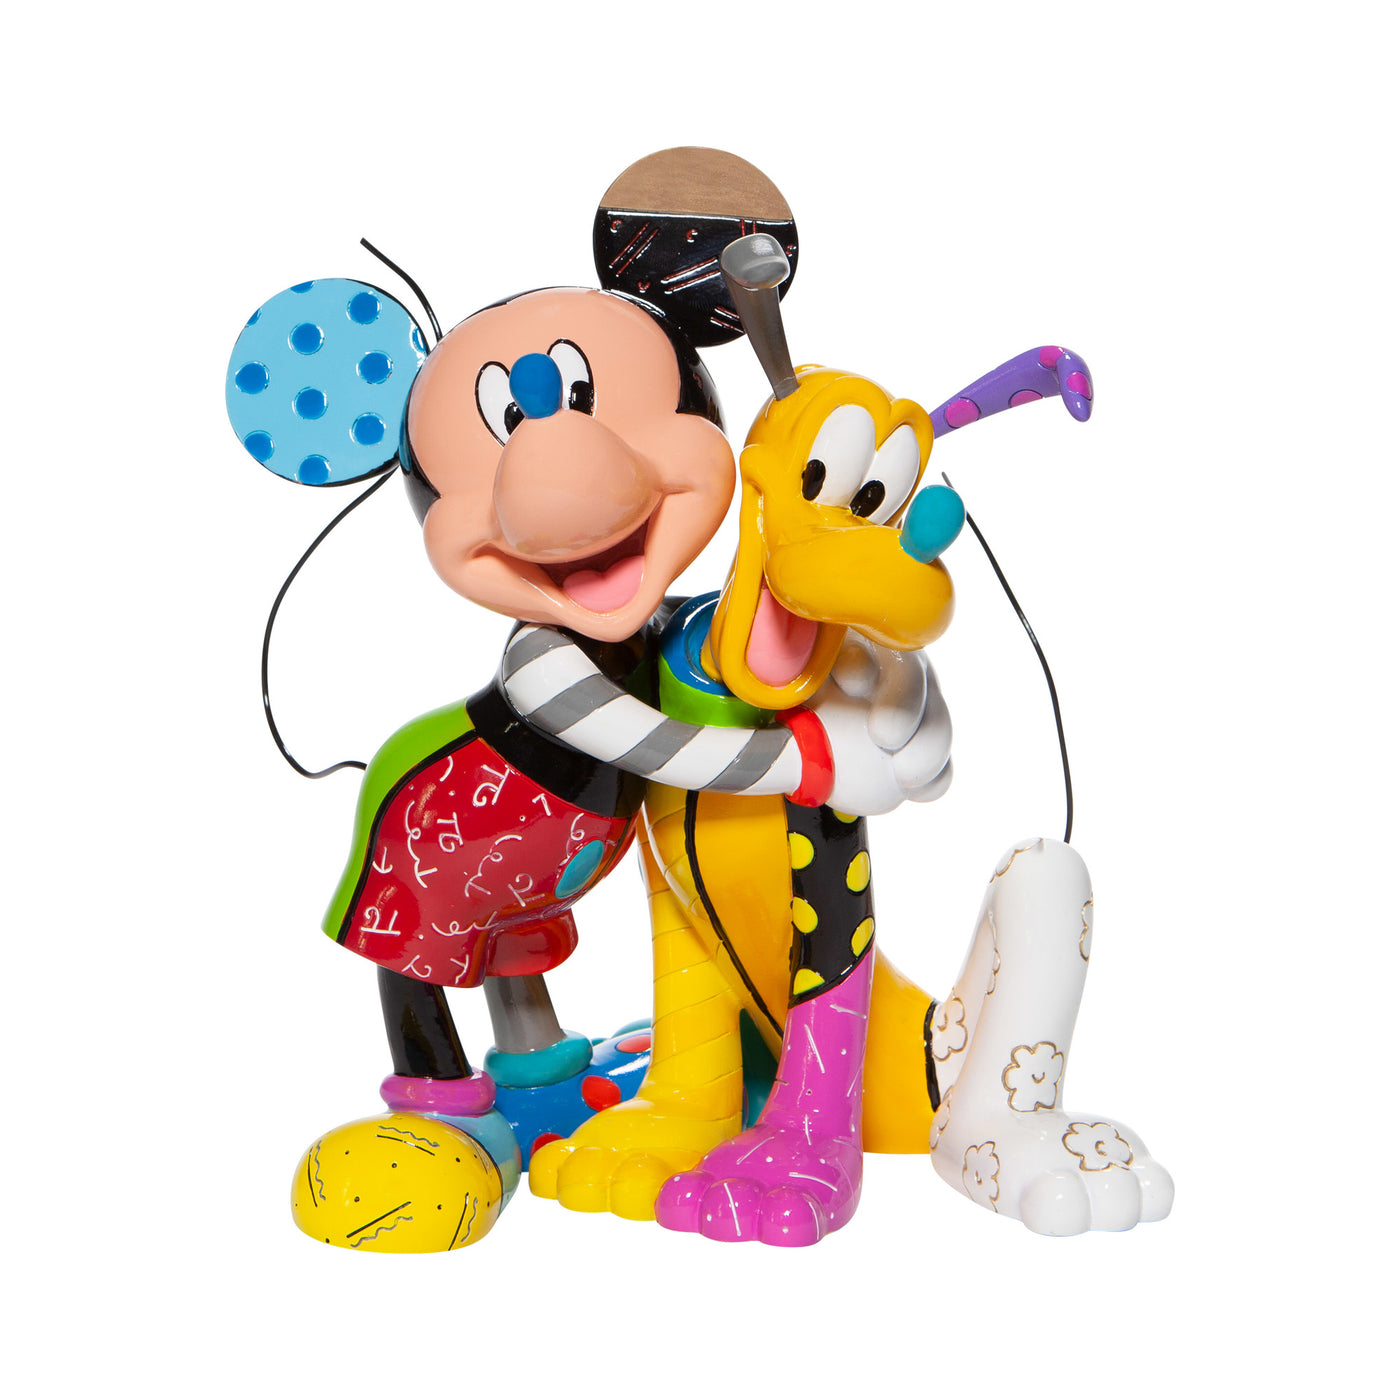 Disney Britto Mickey & Pluto Figurine New with Box